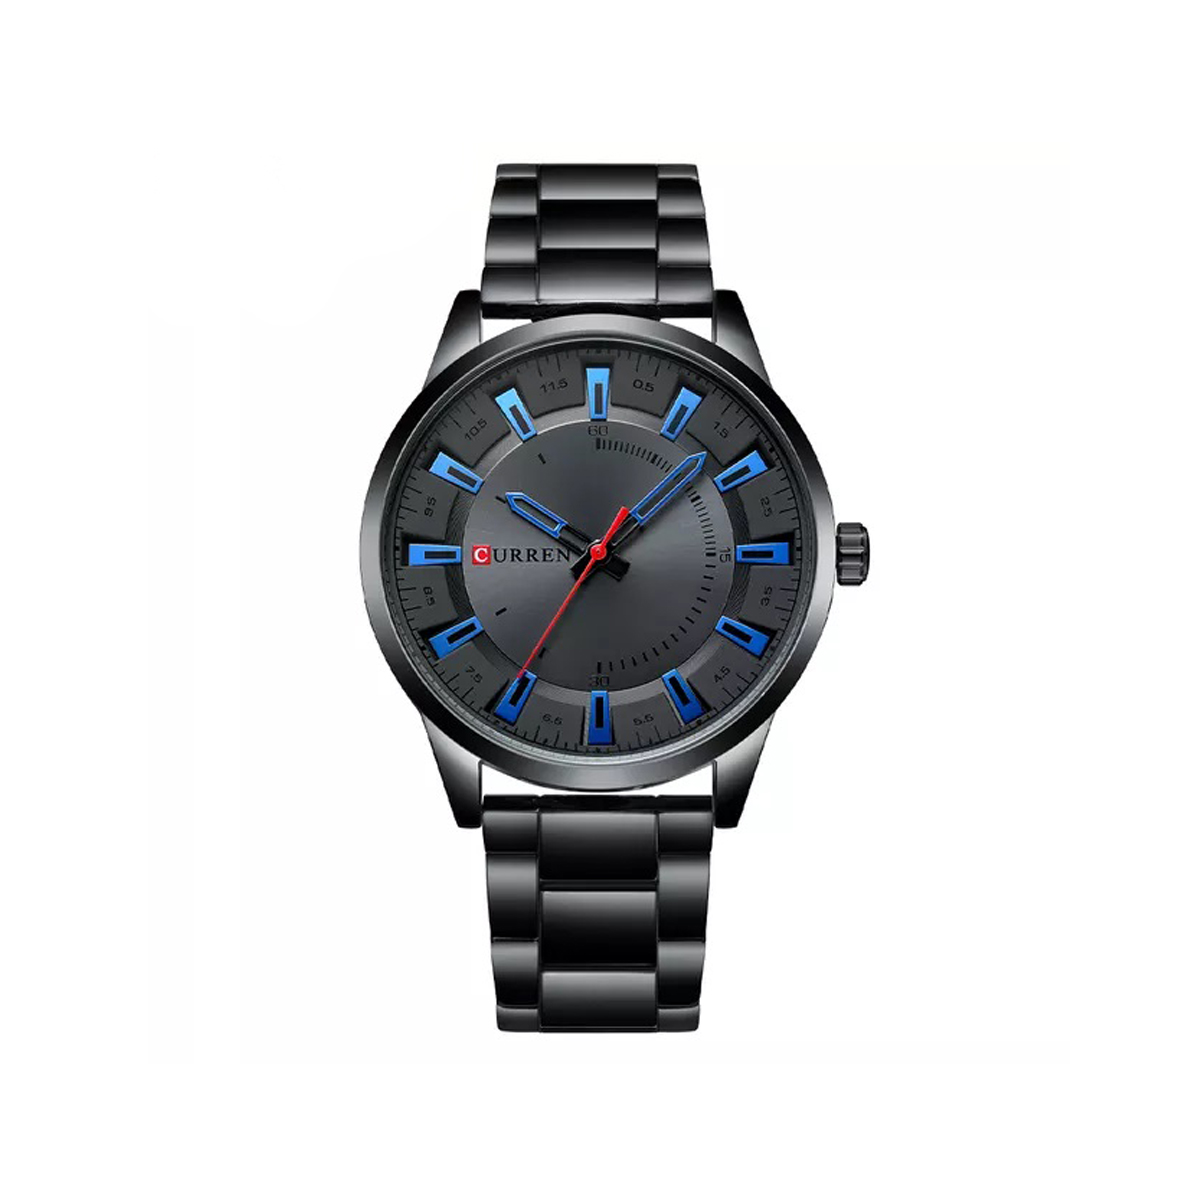 CURREN 8406 Quartz Stainless Steel Wrist watches for Men-Black Blue